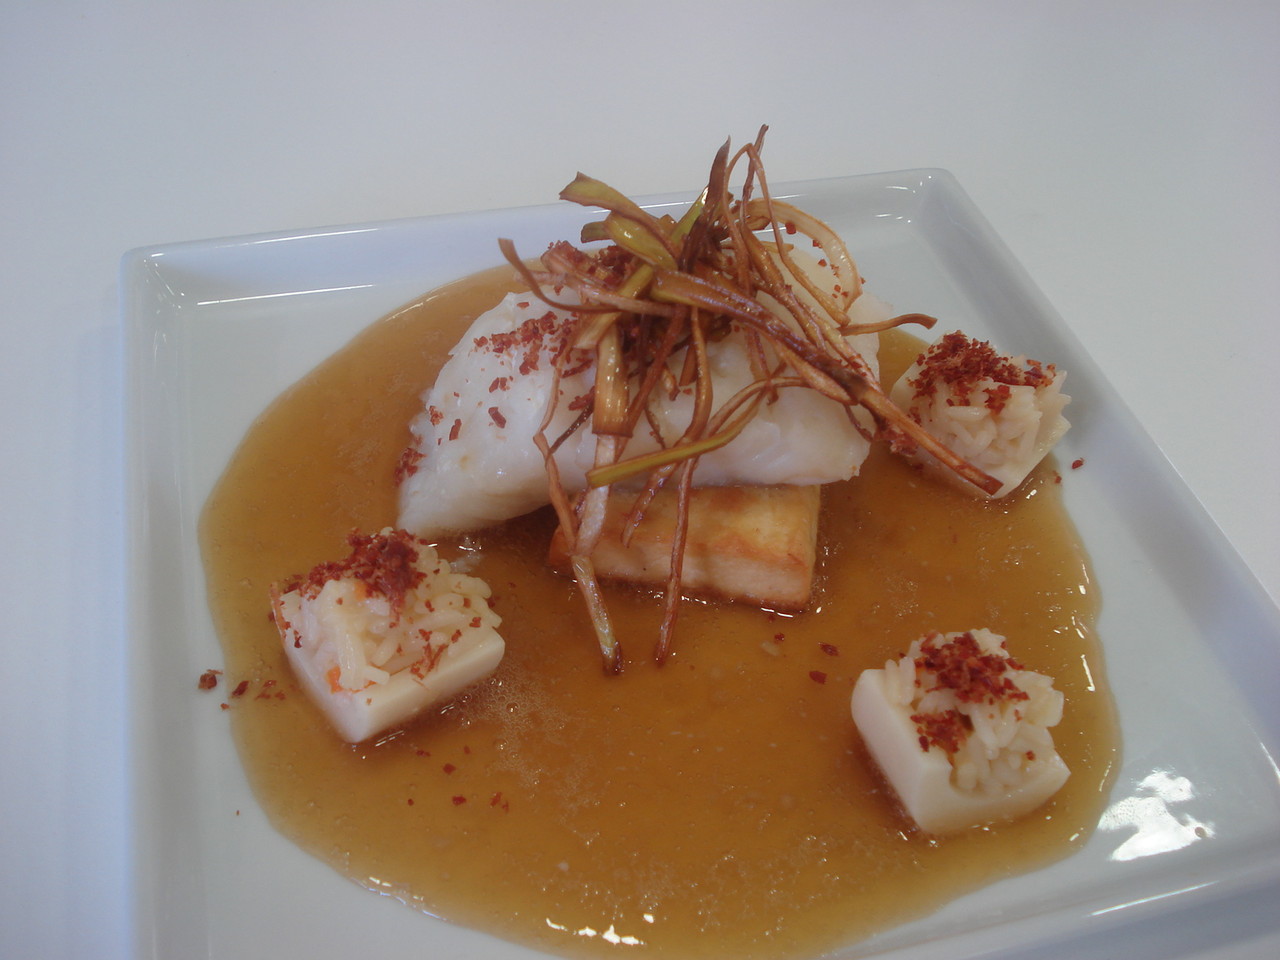 Falsa sopa miso de bacalao con arroz basmati y polvo de iberico (Finalista XX Certamente gastronomia de Madrid)